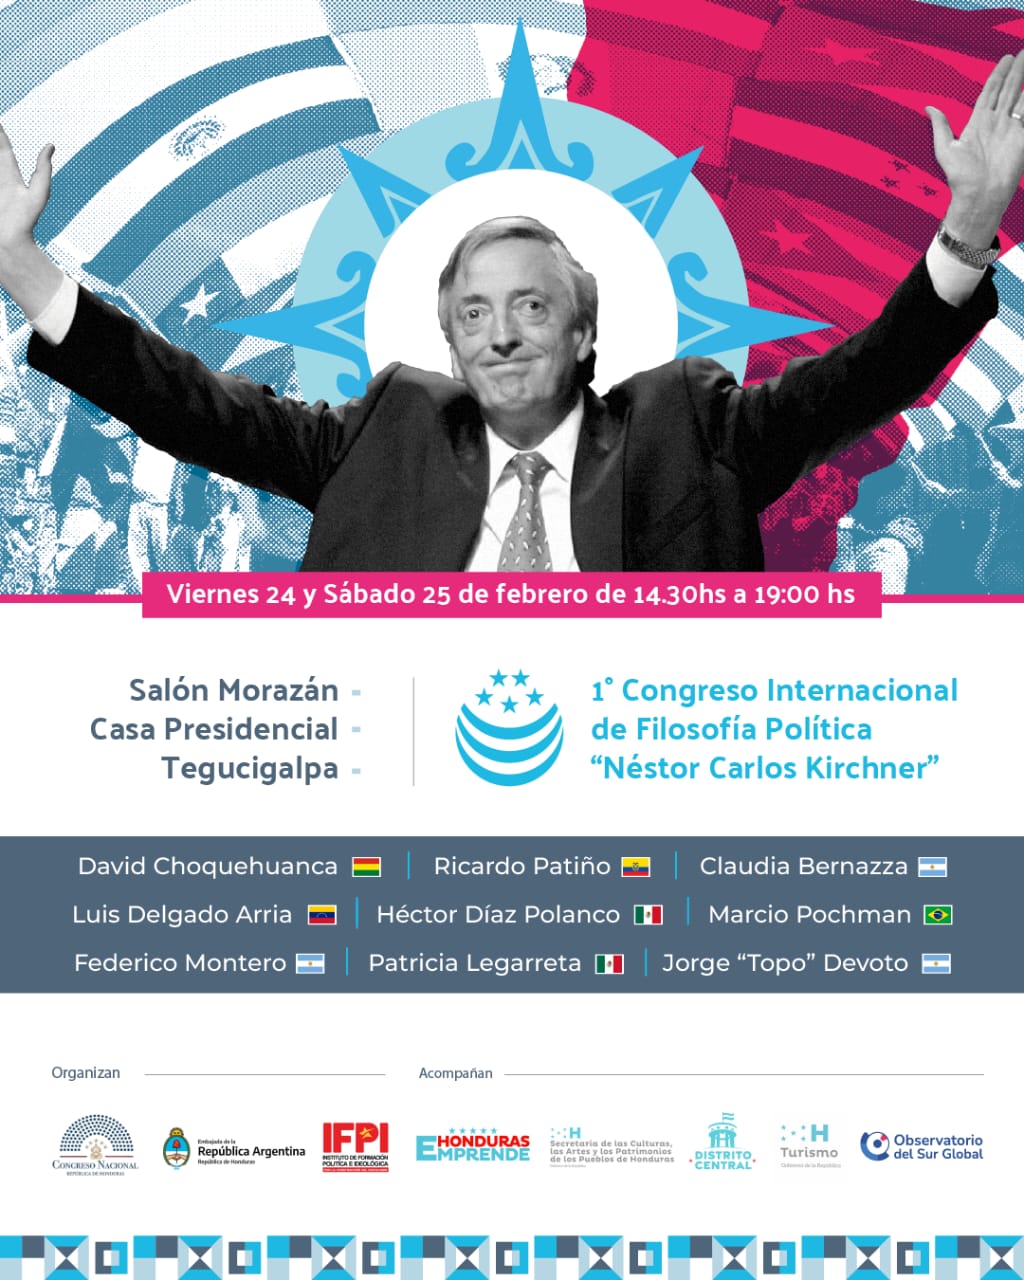 El Congreso Internacional de Filosofía Política se realizará en Honduras y en homenaje a Néstor Carlos Kirchner